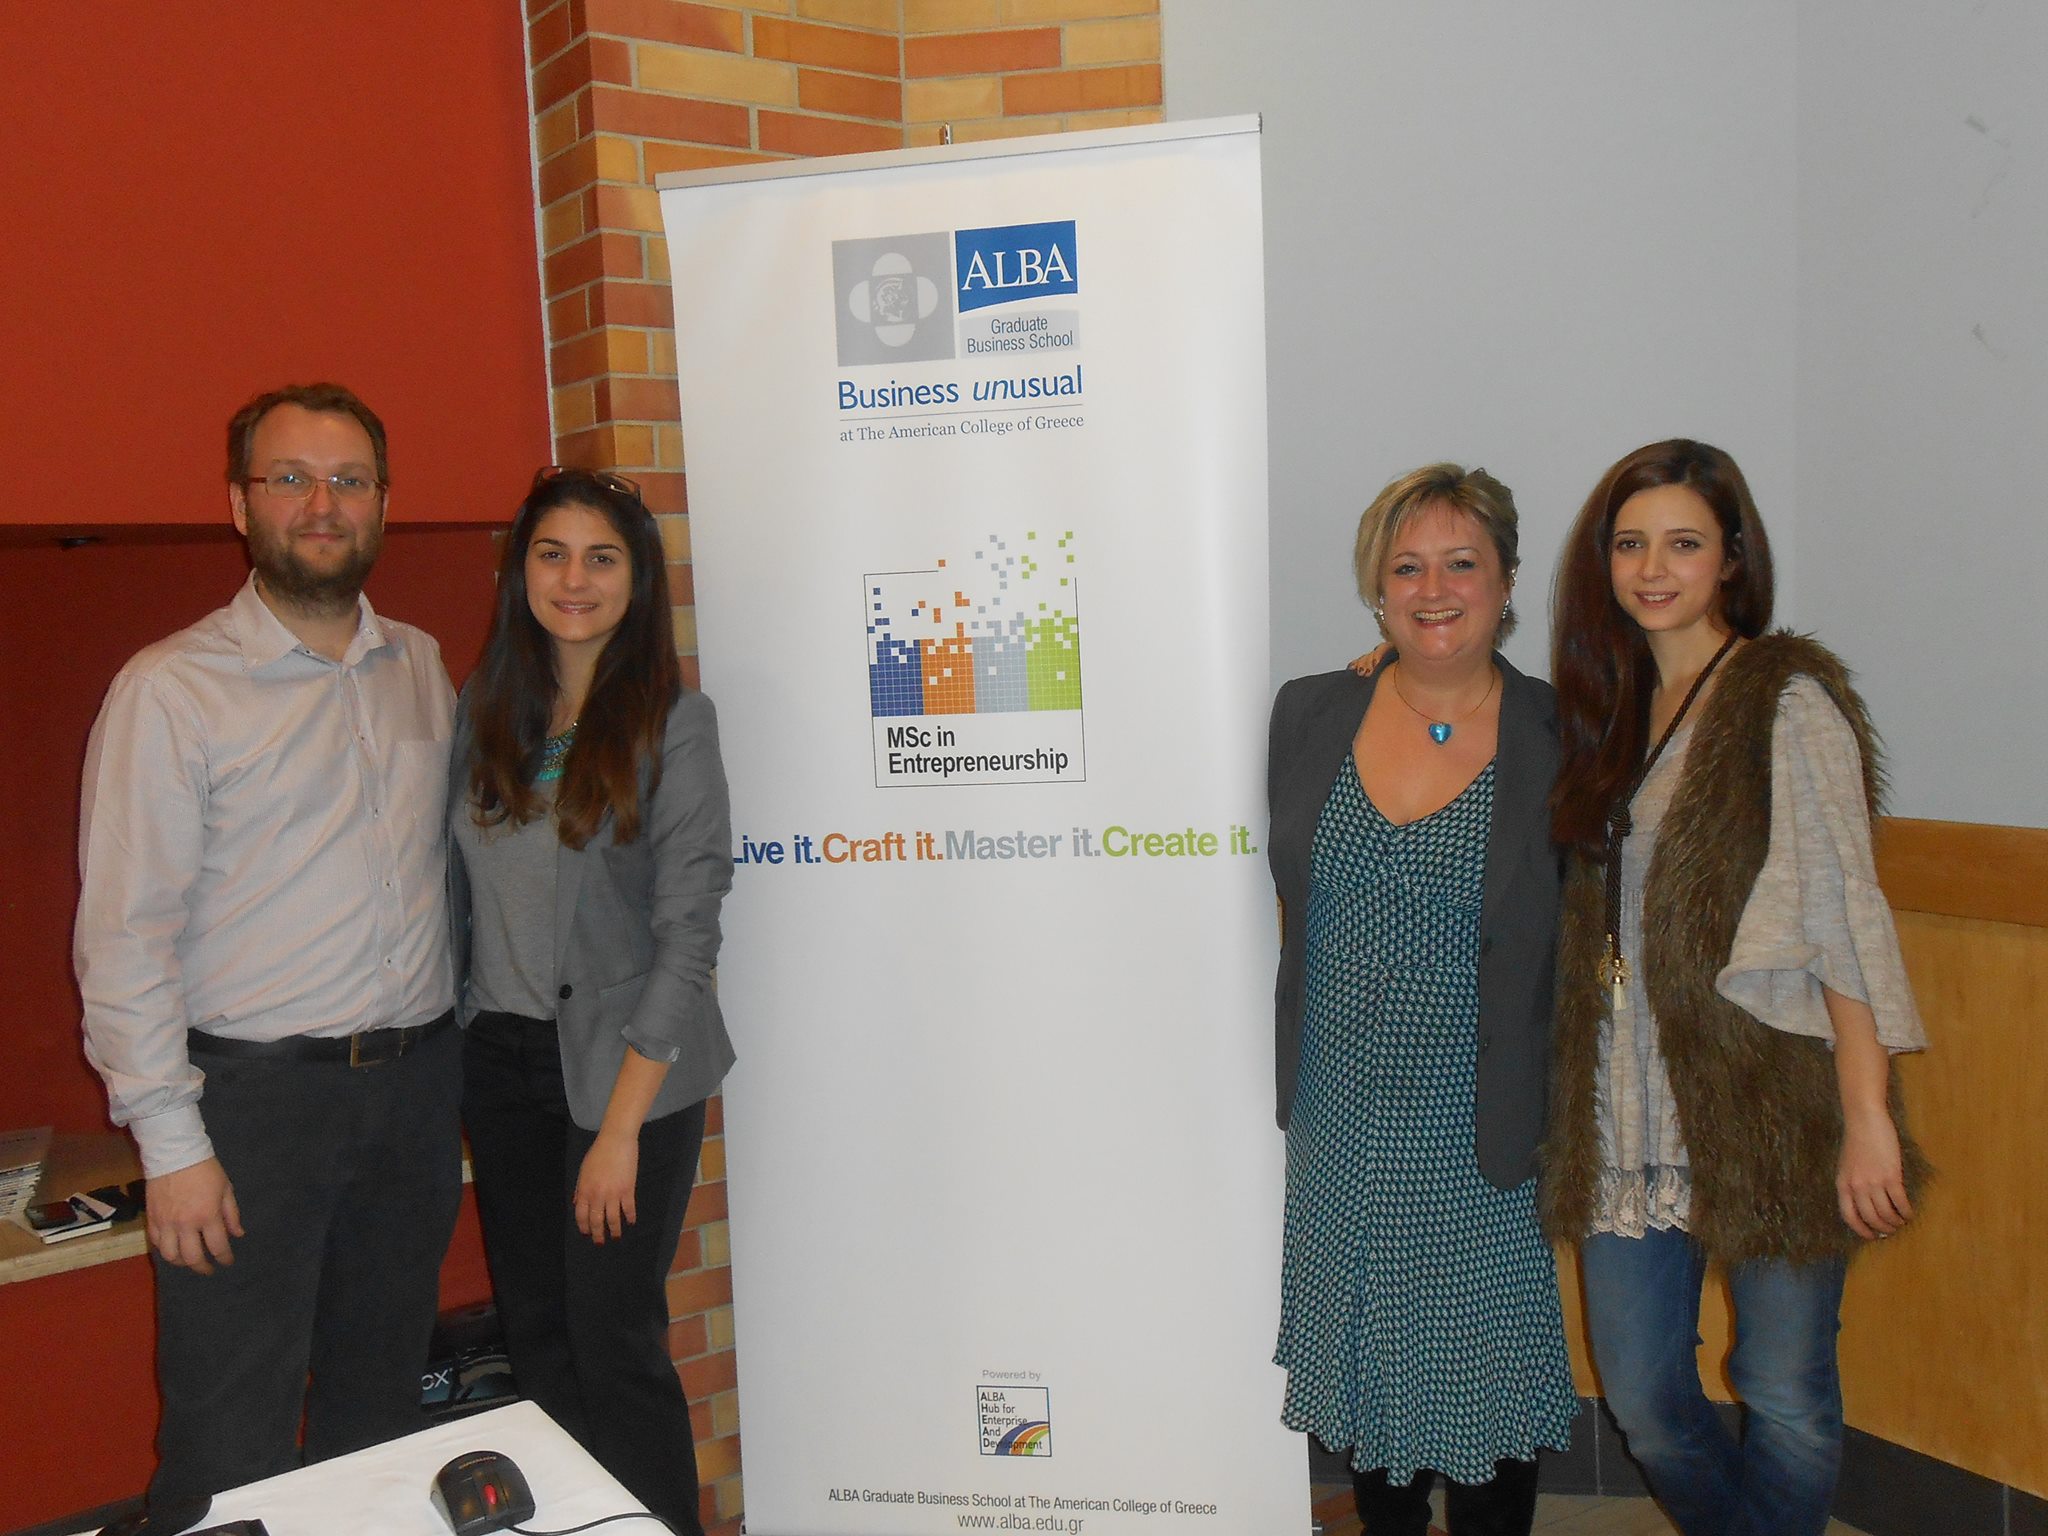 Νέο Μεταπτυχιακό Πρόγραμμα σε Επιχειρηματικότητα από το ALBA Graduate Business School